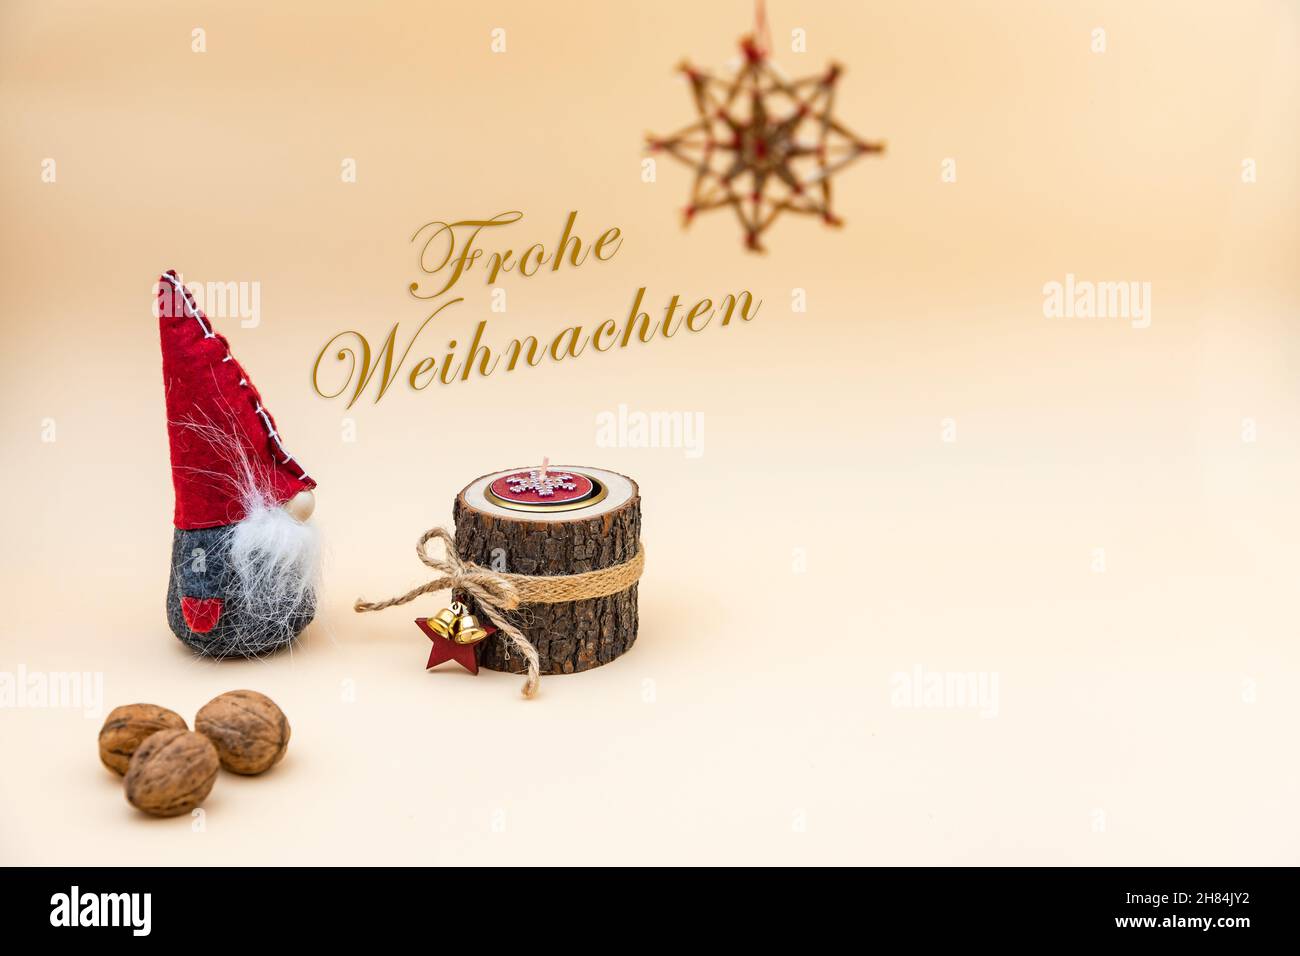 Carte postale de Noël avec texte Frohe Weihnachten et fond beige, noix, bougie en bois et gnome drôle Banque D'Images